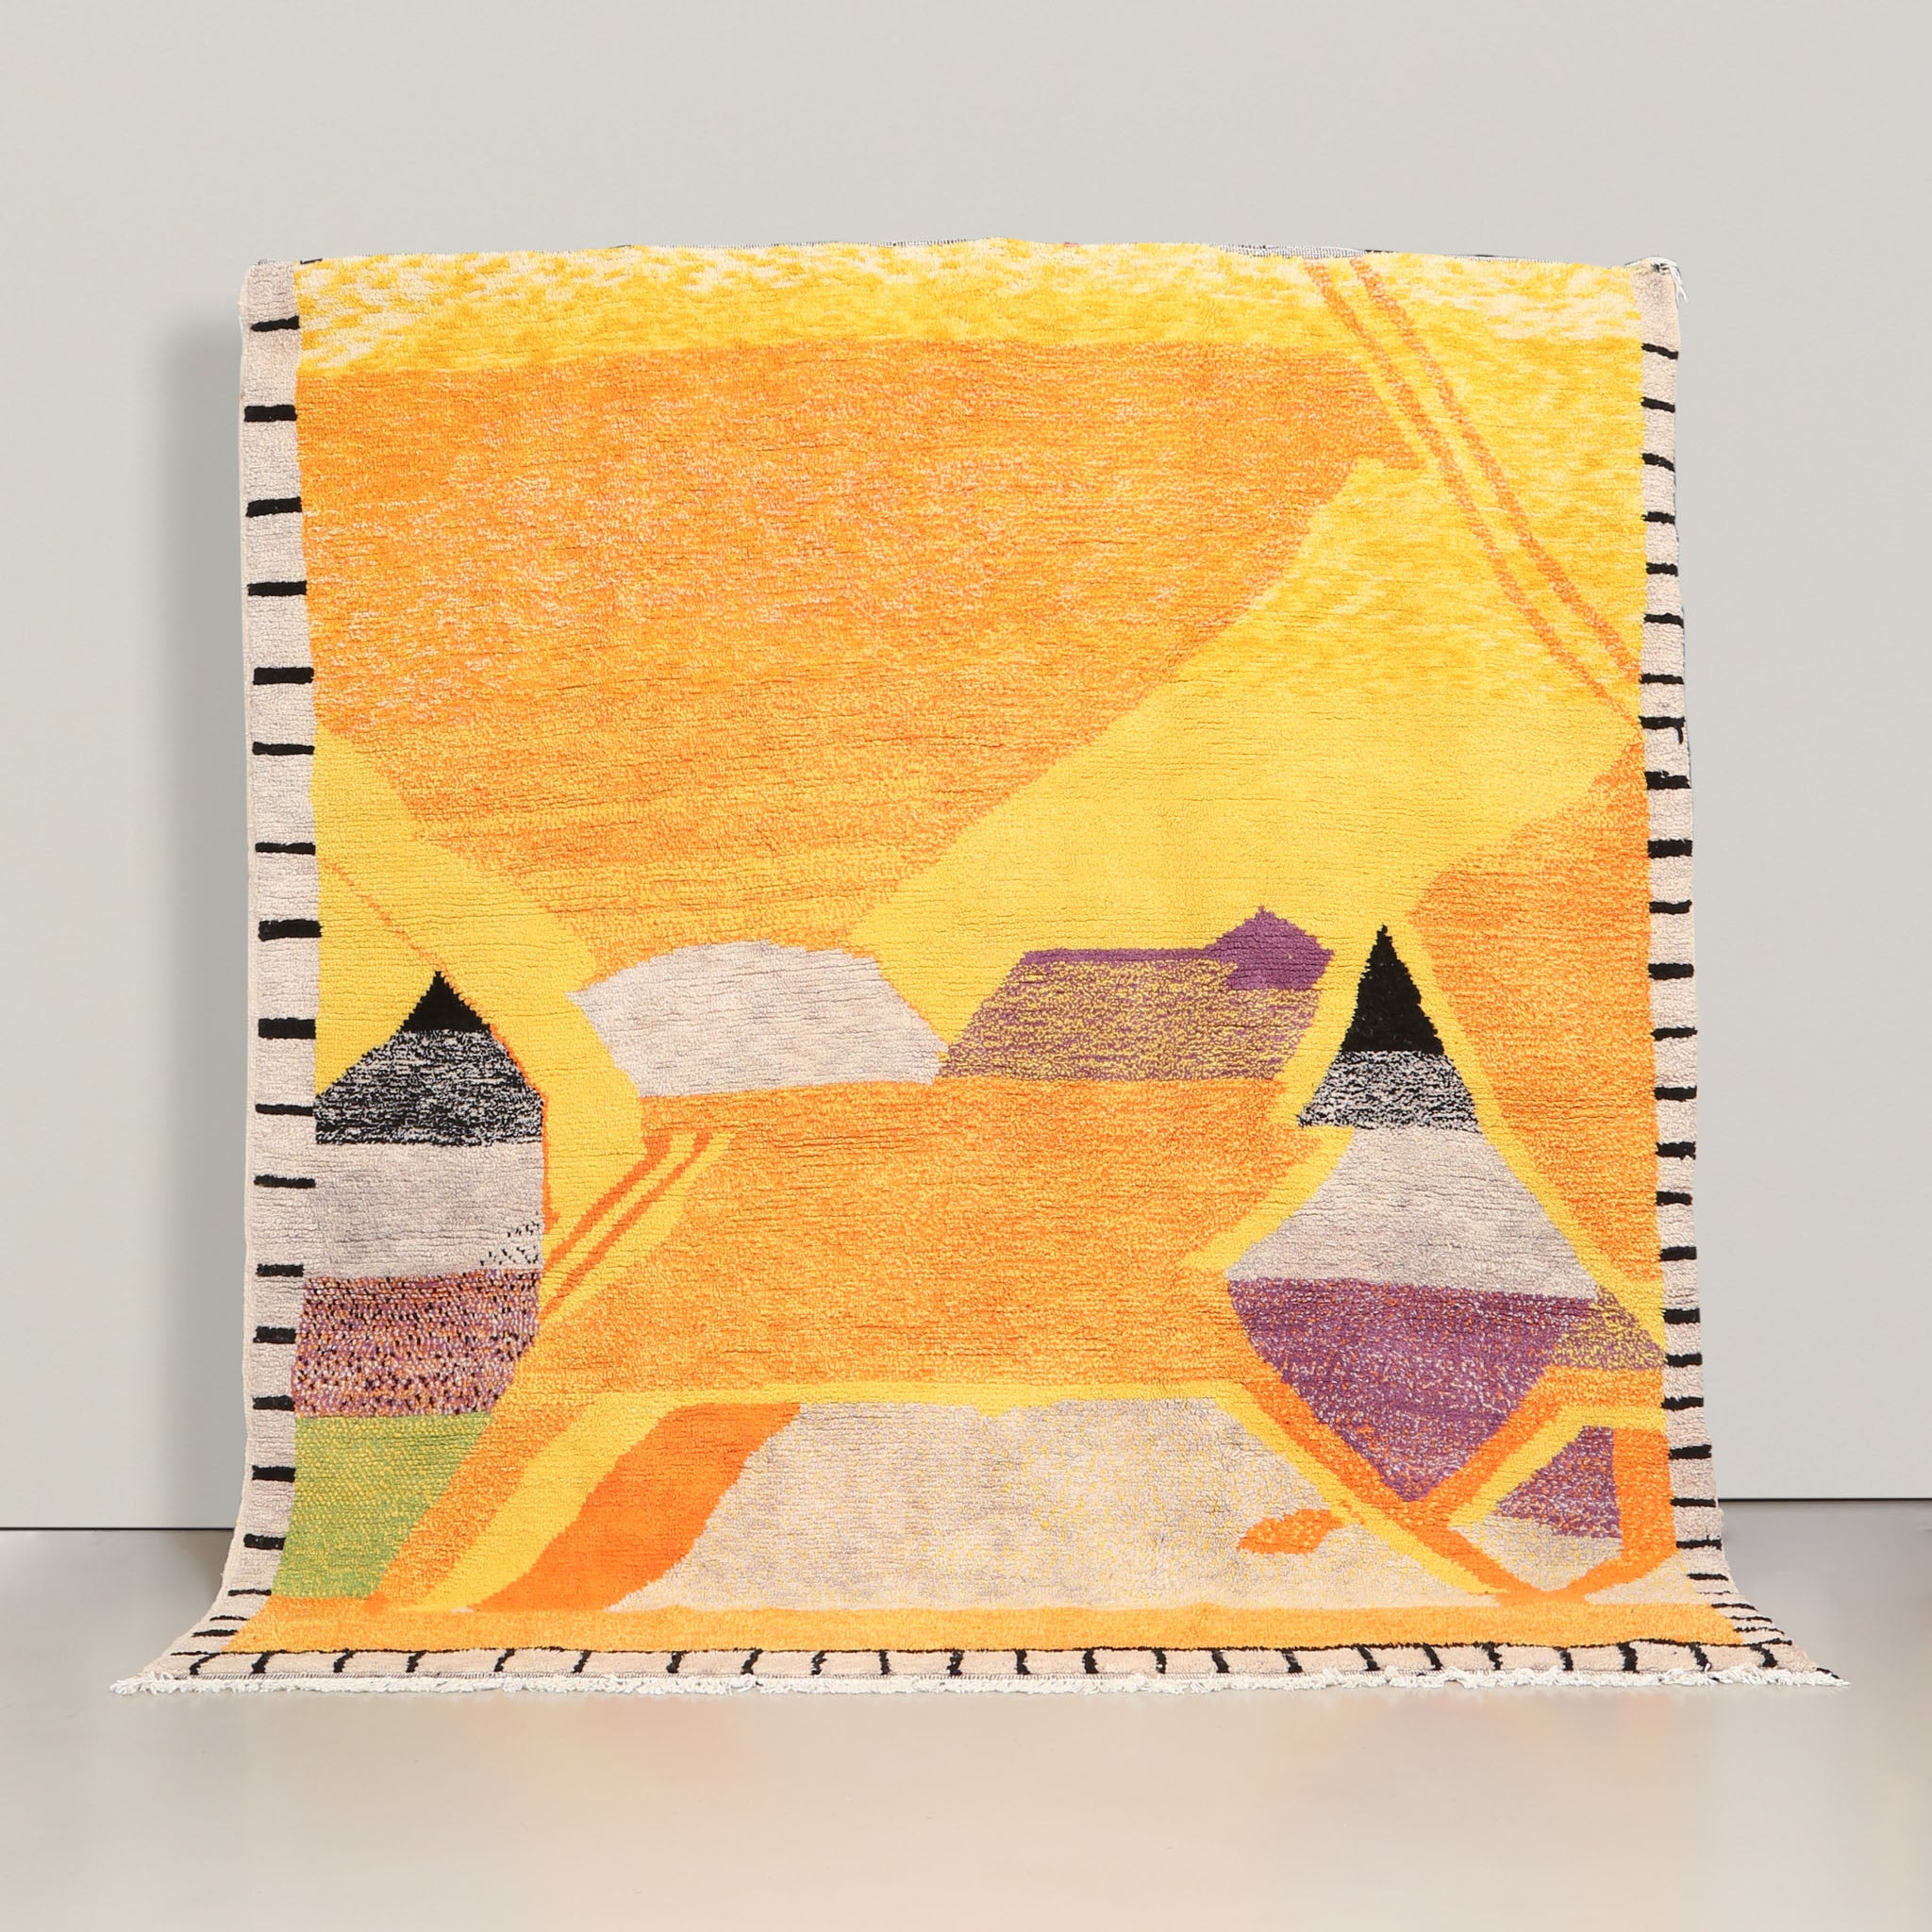 tappeto azilal realizzato a mano in lana tinta prevalentemente in giallo e arancione con figure astratte